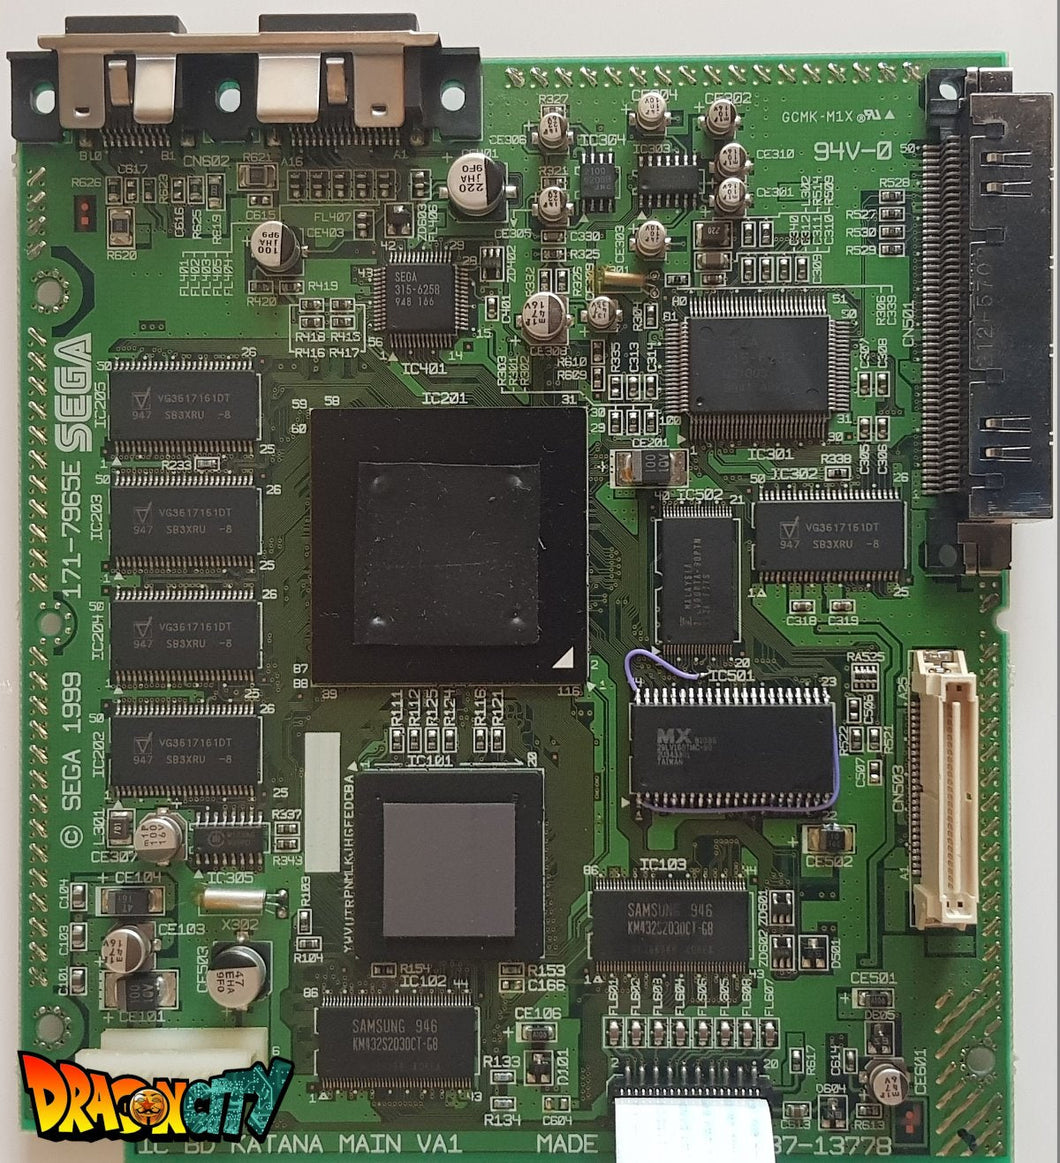 Dreamcast - Carte mère Dreamcast VA0/VA1 + NTSC Patch 50Hz/60Hz Auto + Bios Dreamboot/Freezone